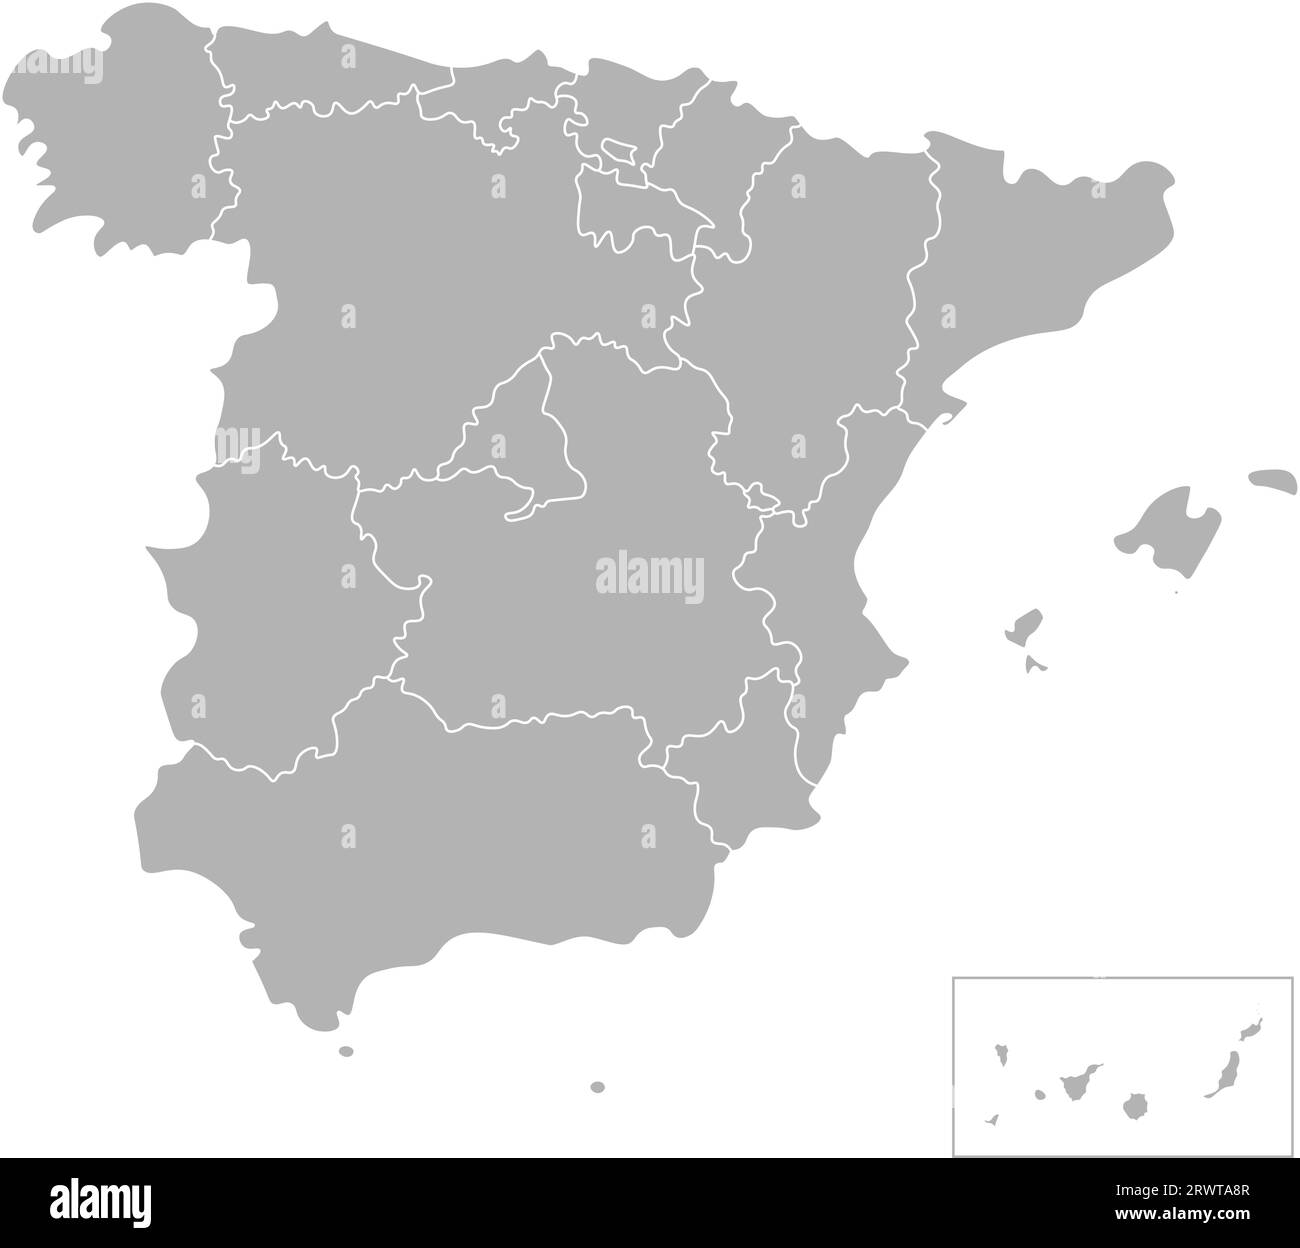 Vektorisolierte Darstellung einer vereinfachten Verwaltungskarte Spaniens. Grenzen der Grafschaften. Graue Silhouetten. Weißer Umriss und Hintergrund Stock Vektor